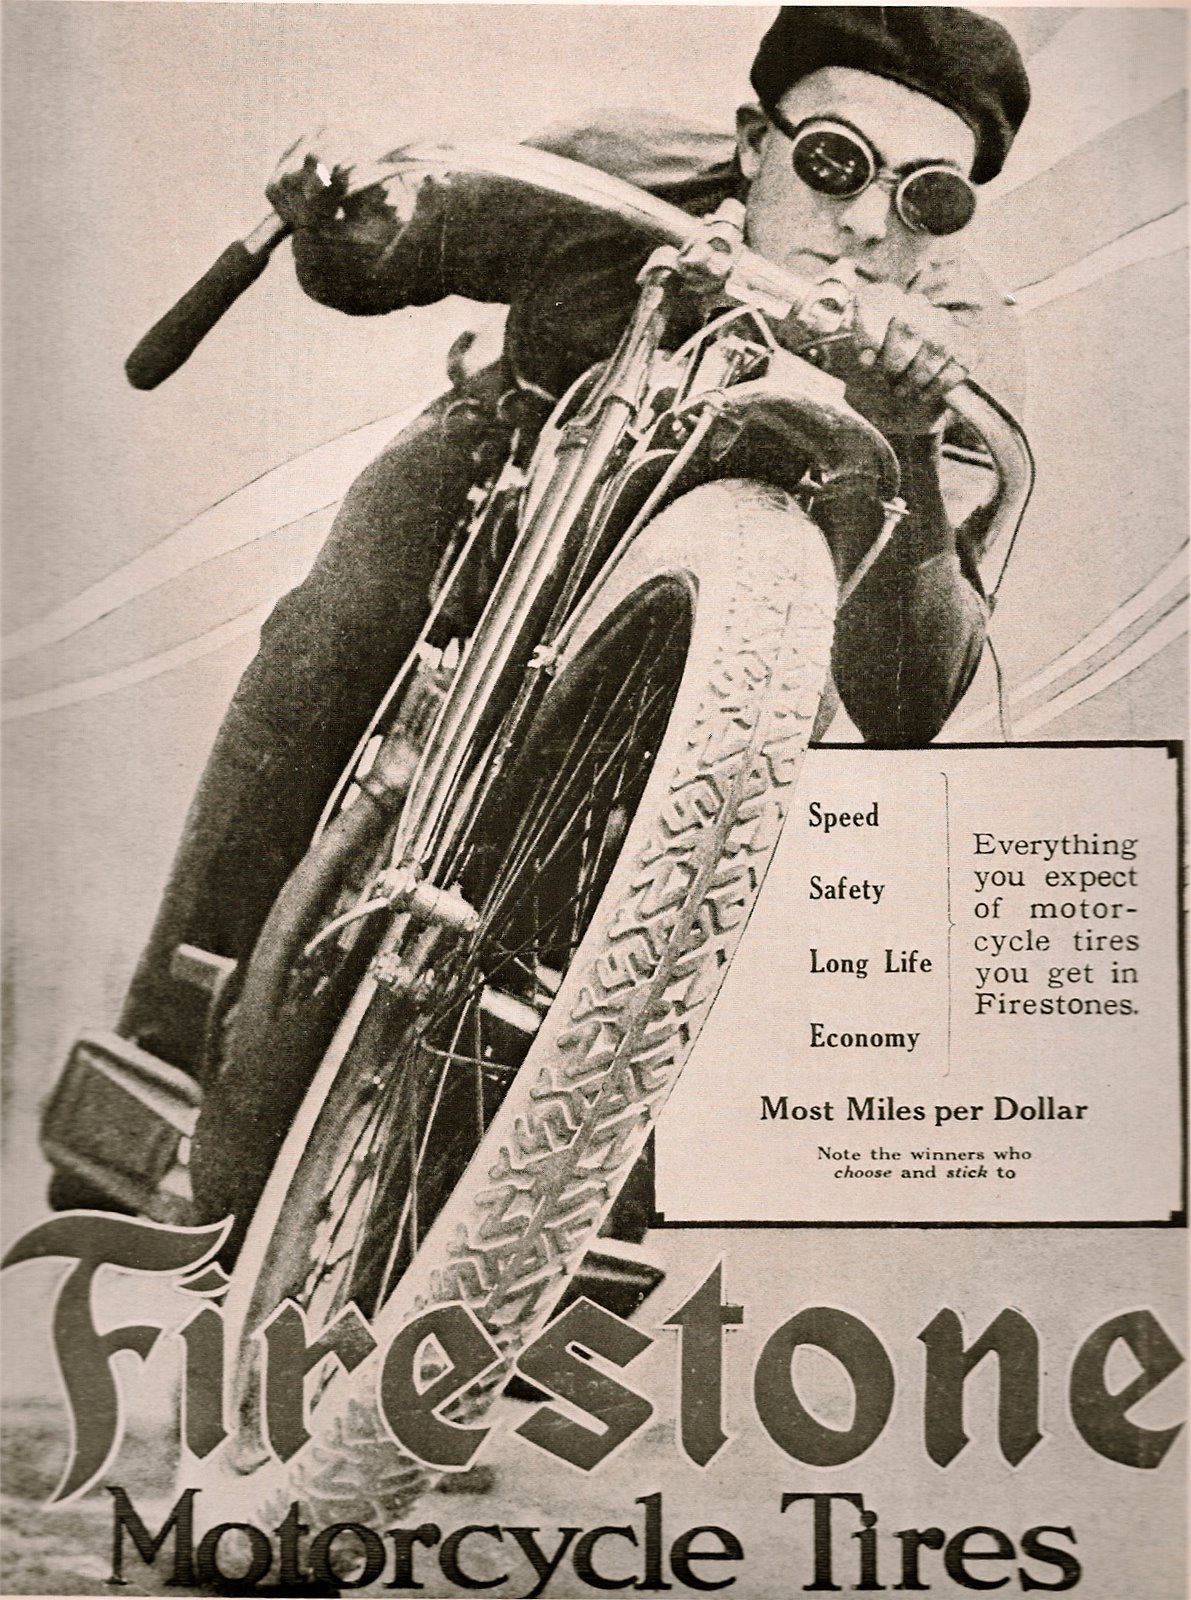 Vintage Motorcycle Advertisements 69